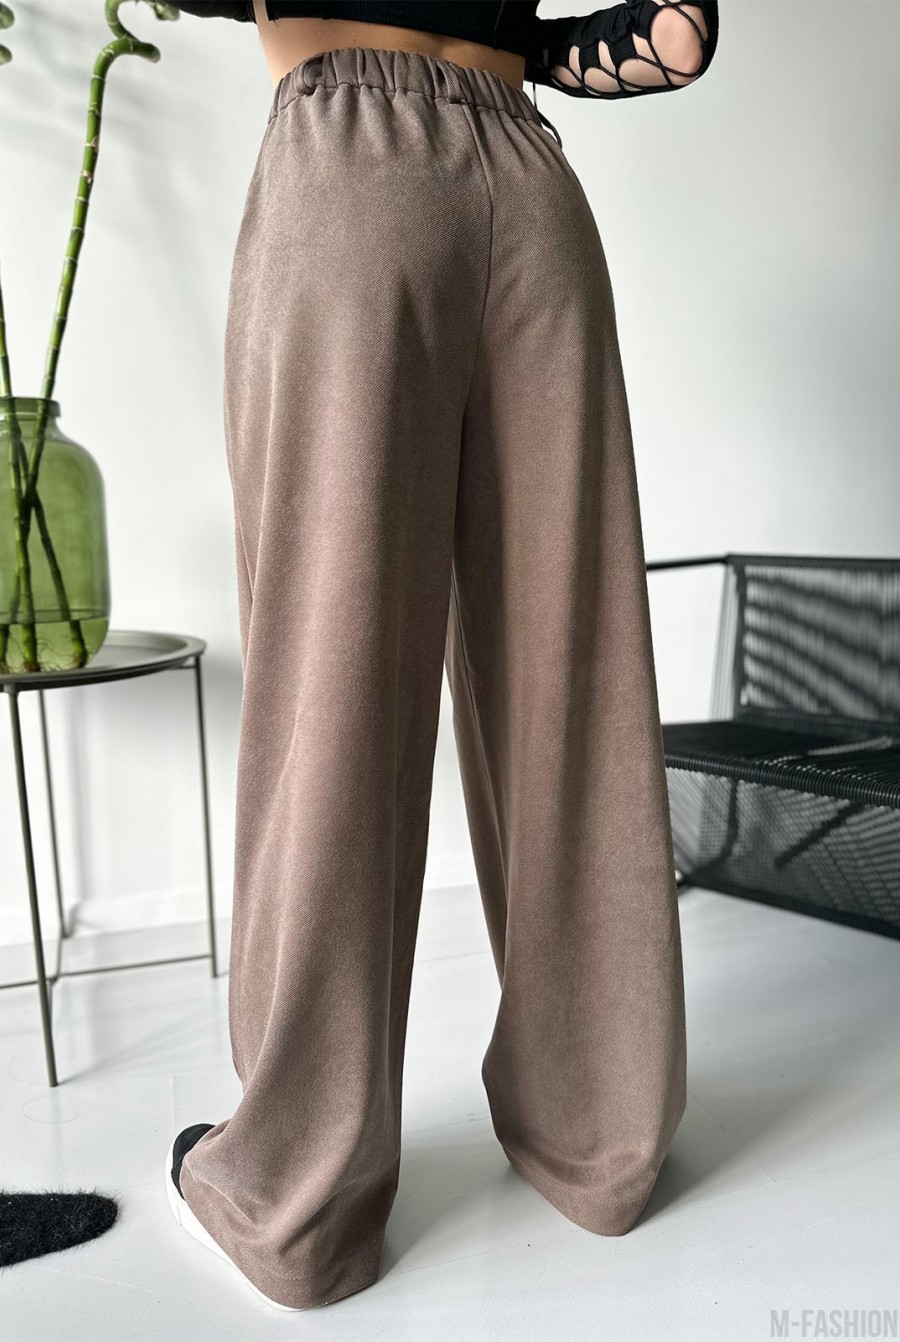 Коричневые свободные брюки палаццо из эко-замши - Фото 2